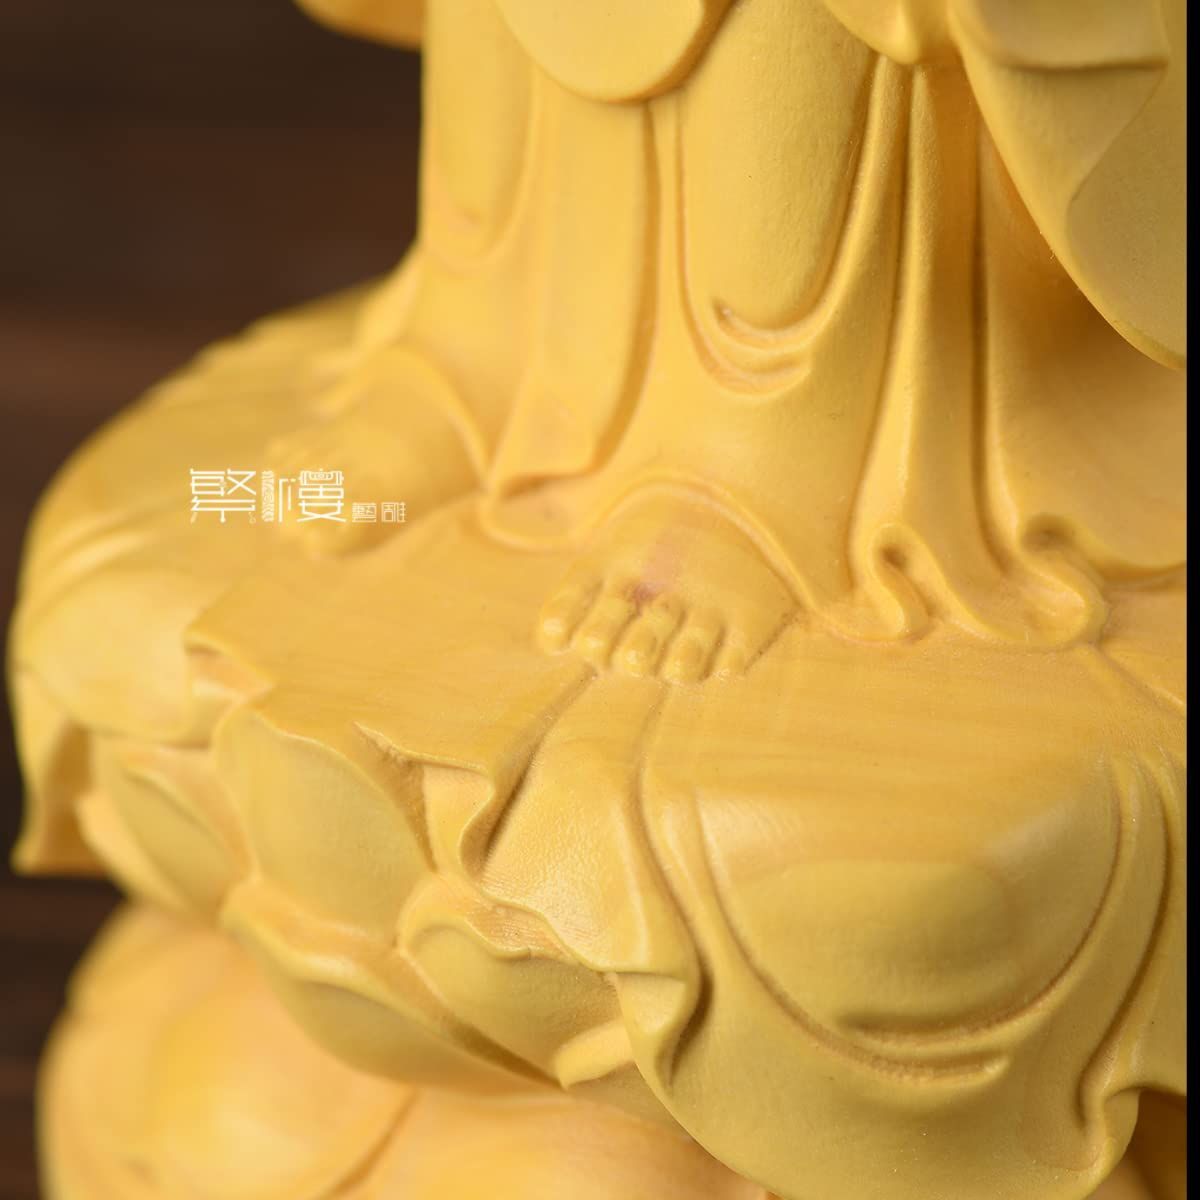 繁樓藝雕 仏像 地蔵菩薩 仏壇仏像 木彫り置物 柘植の木 祈る 厄除け